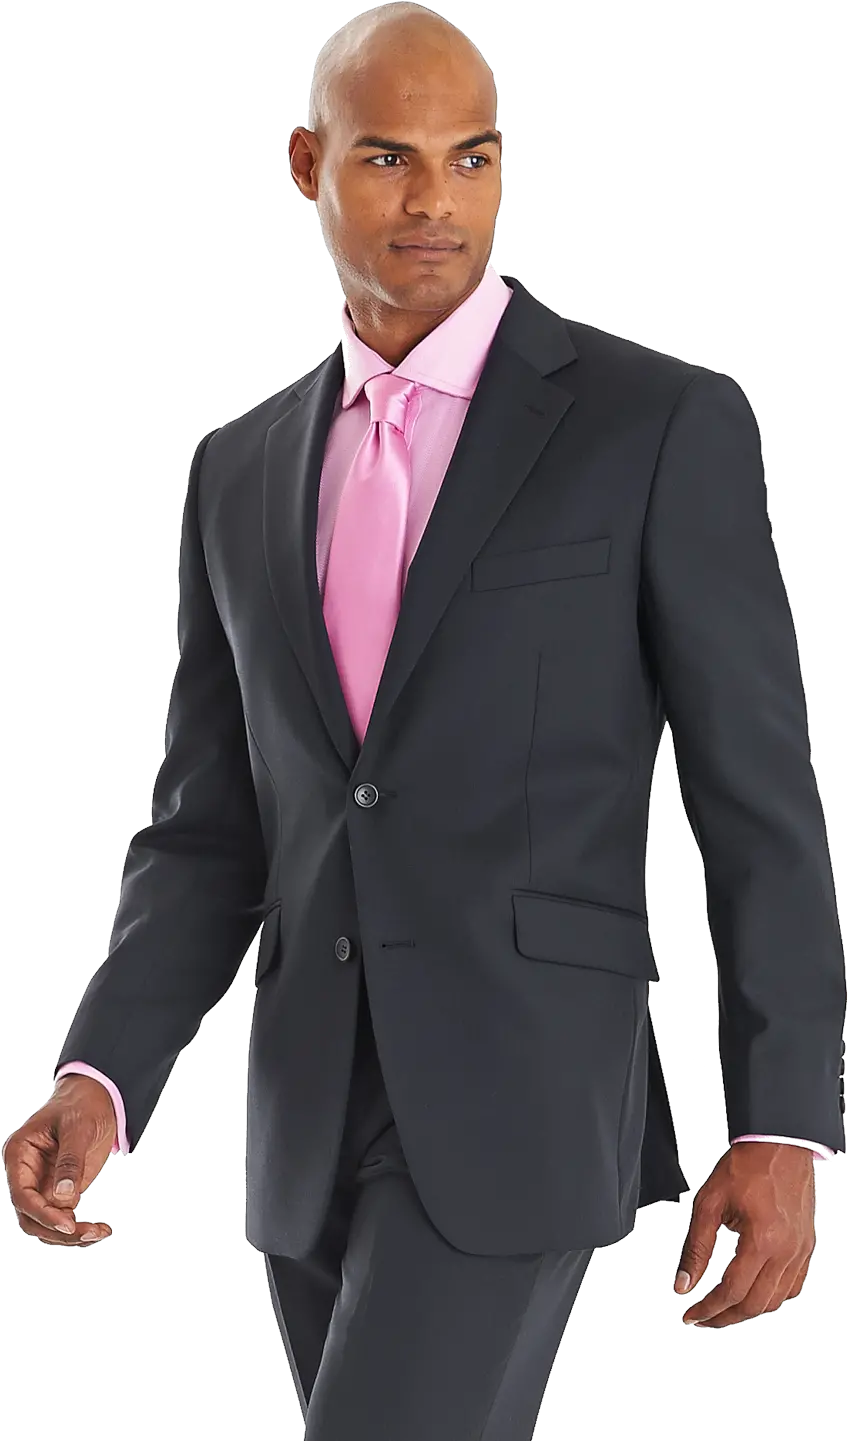 Suit Png Images Free Download Black Suit Pink Tie Suit Transparent Background